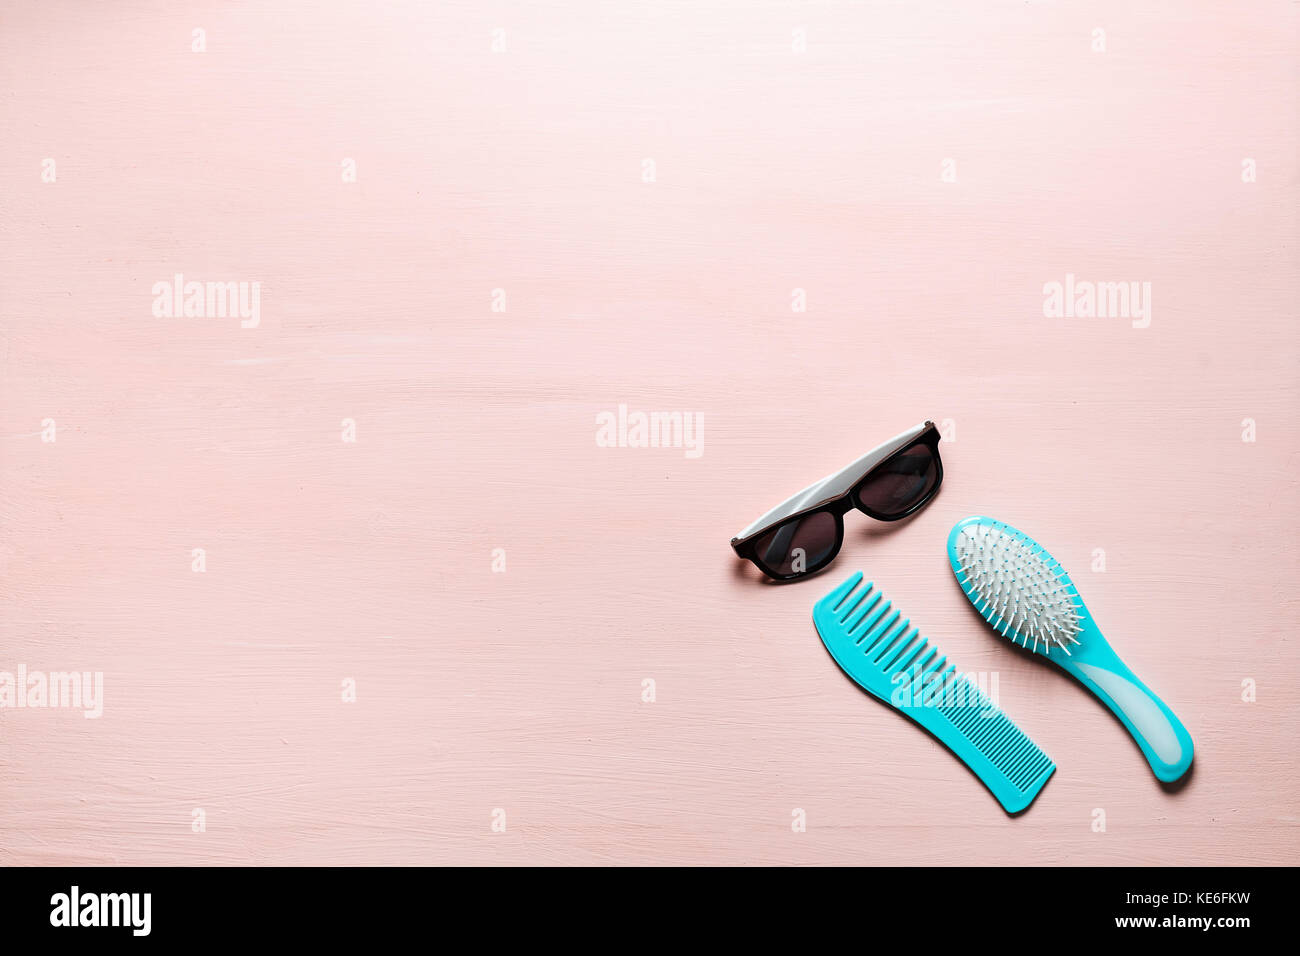 Zwei türkis Haar Kamm Kamm bürsten mit Griff für alle Arten und Sonnenbrille auf rosa Kopie Raum Hintergrund isoliert. Minimalistisch feminine Flach Stockfoto